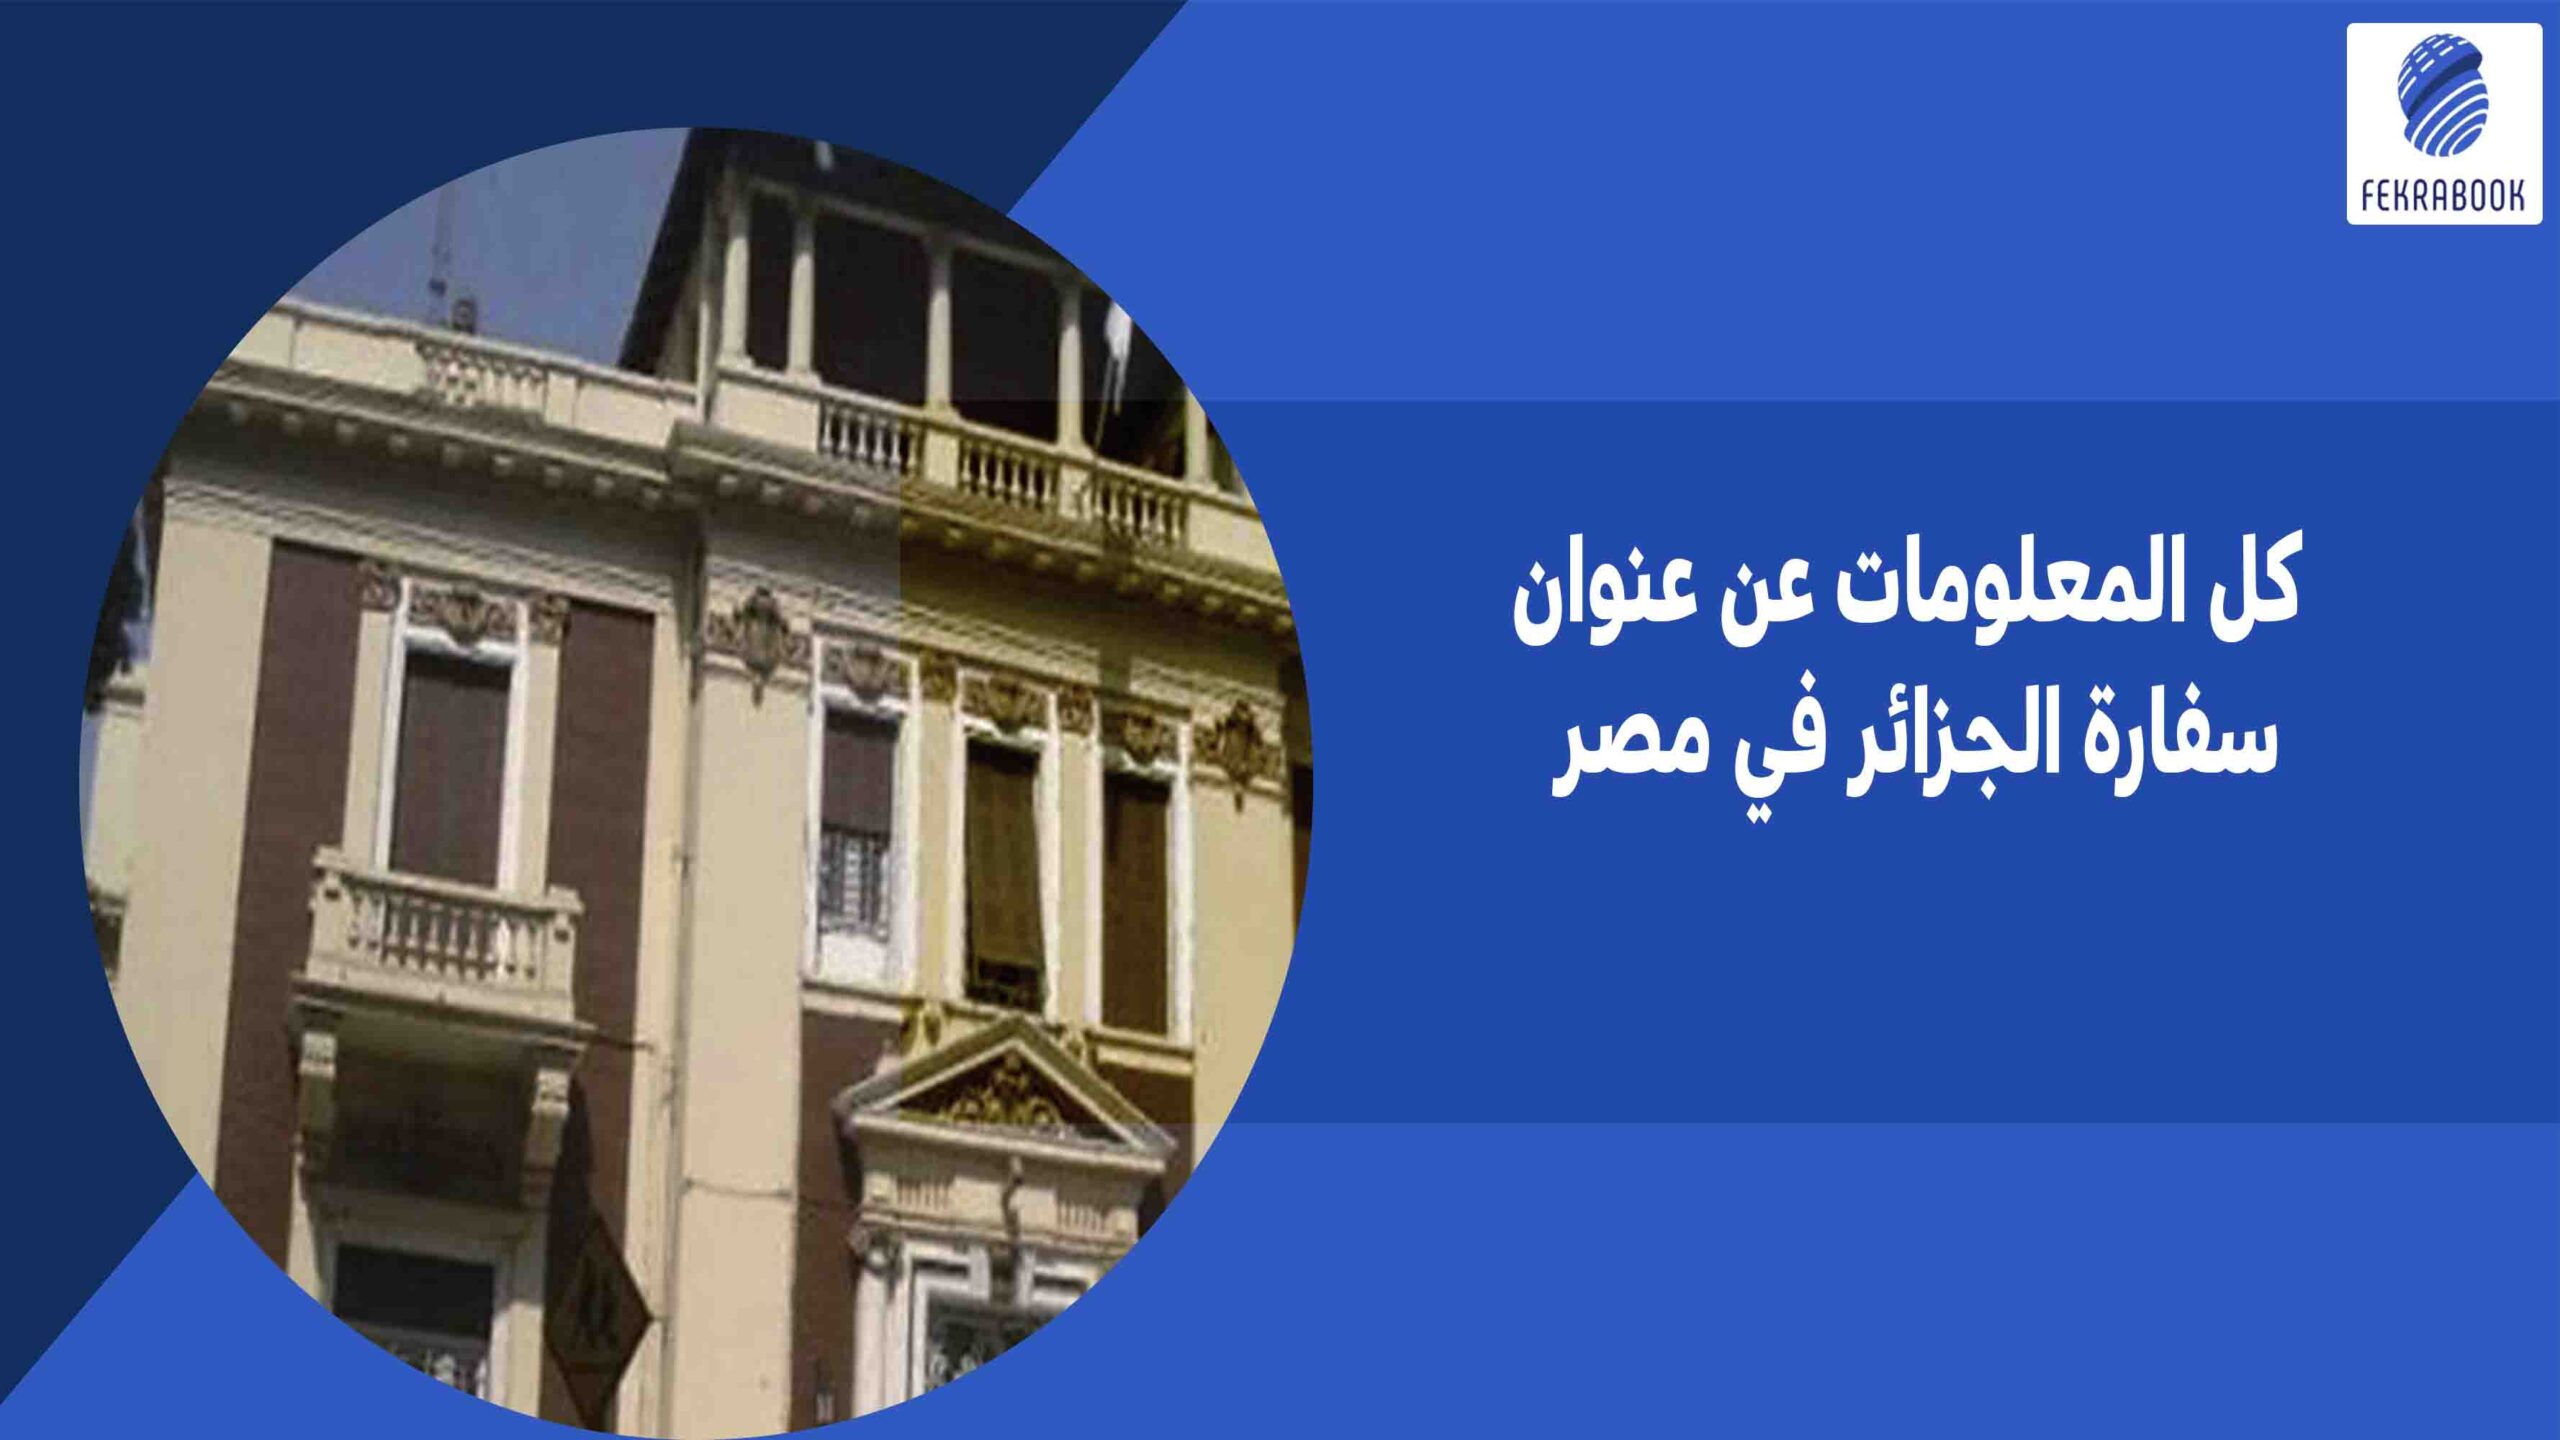 كل المعلومات عن عنوان سفارة الجزائر في مصر